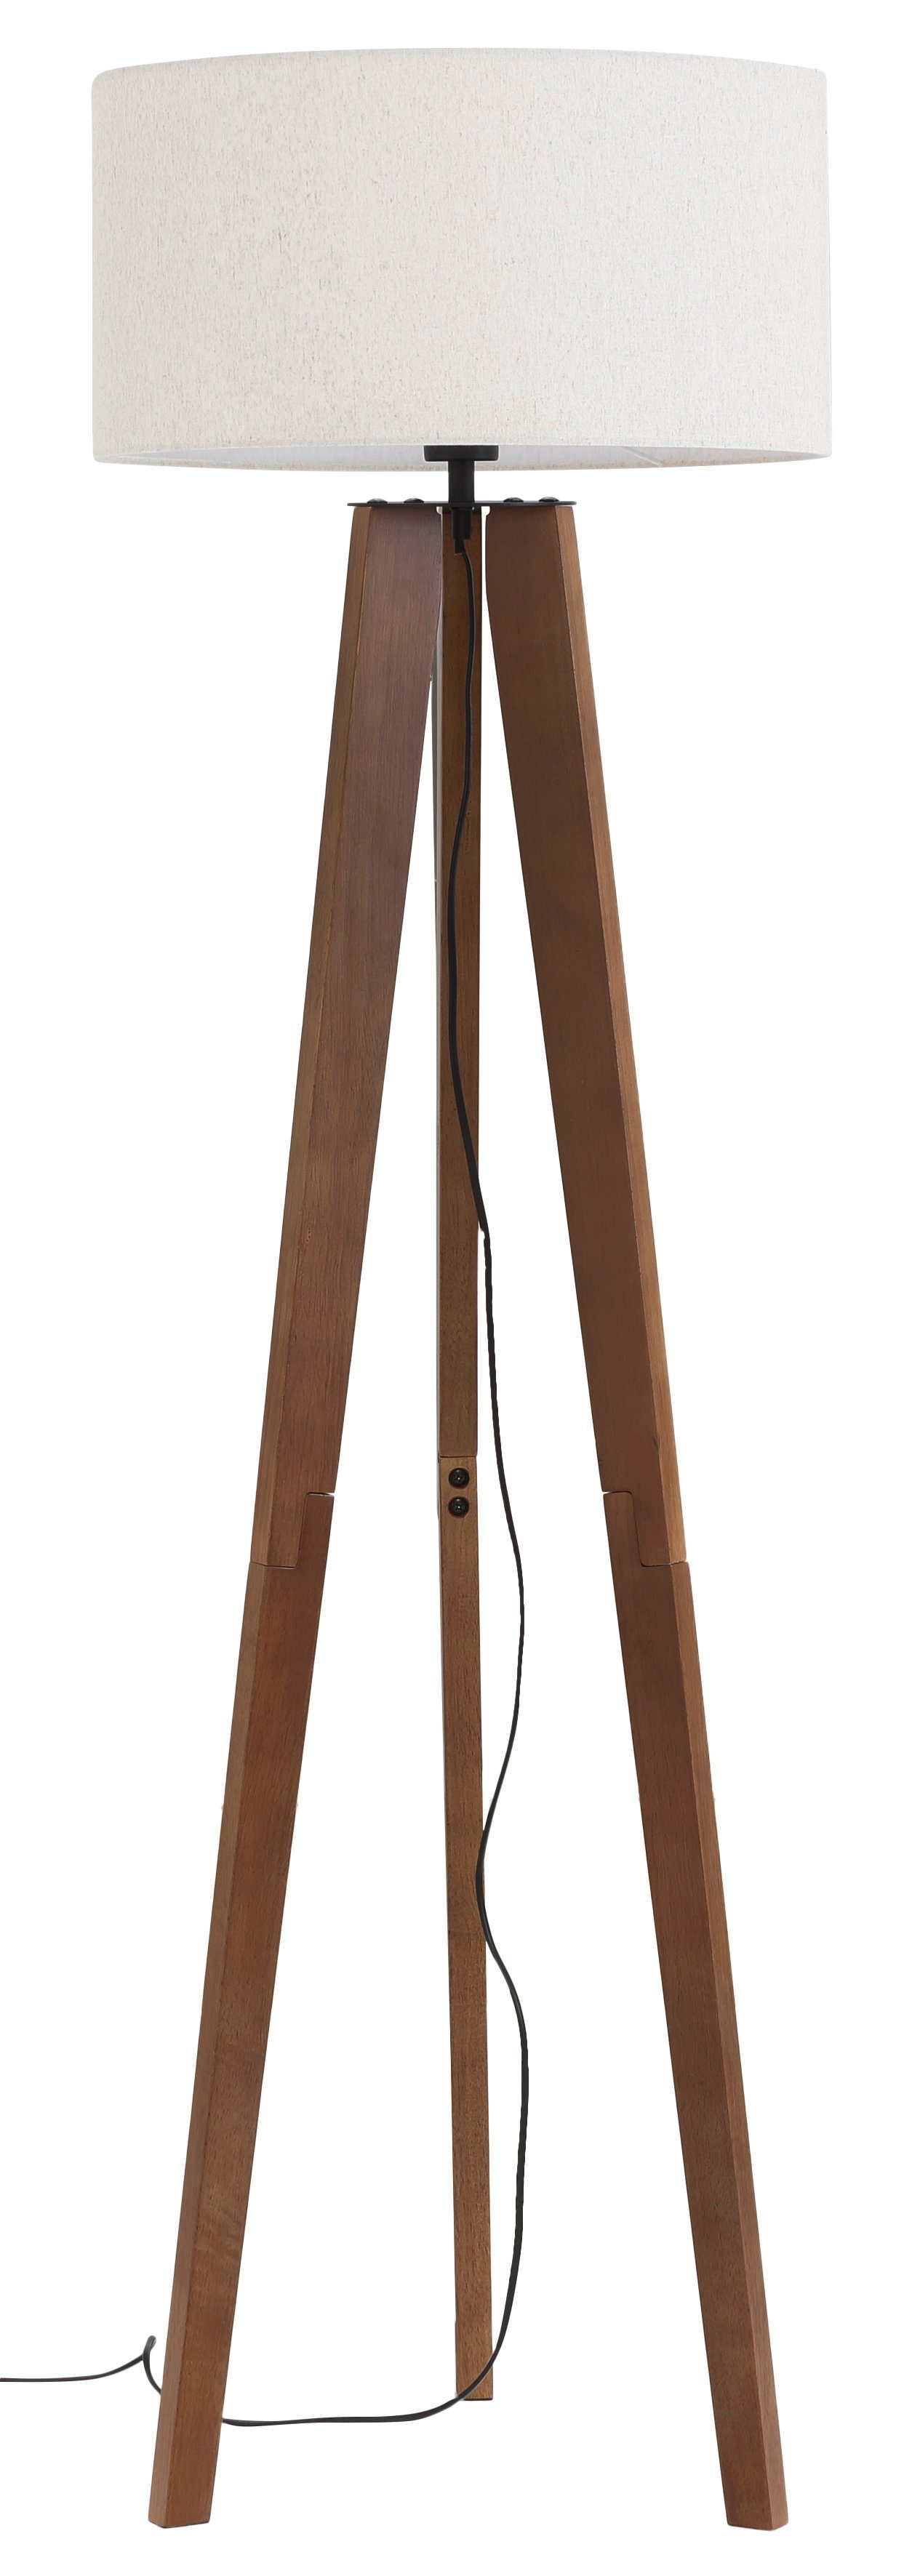 Home affaire Stehlampe »Davos«, Stehleuchte mit massivem Holz Dreibein und  Leinenschirm / Stoff - Schirm Ø 45 cm, Höhe 149 cm online kaufen | OTTO